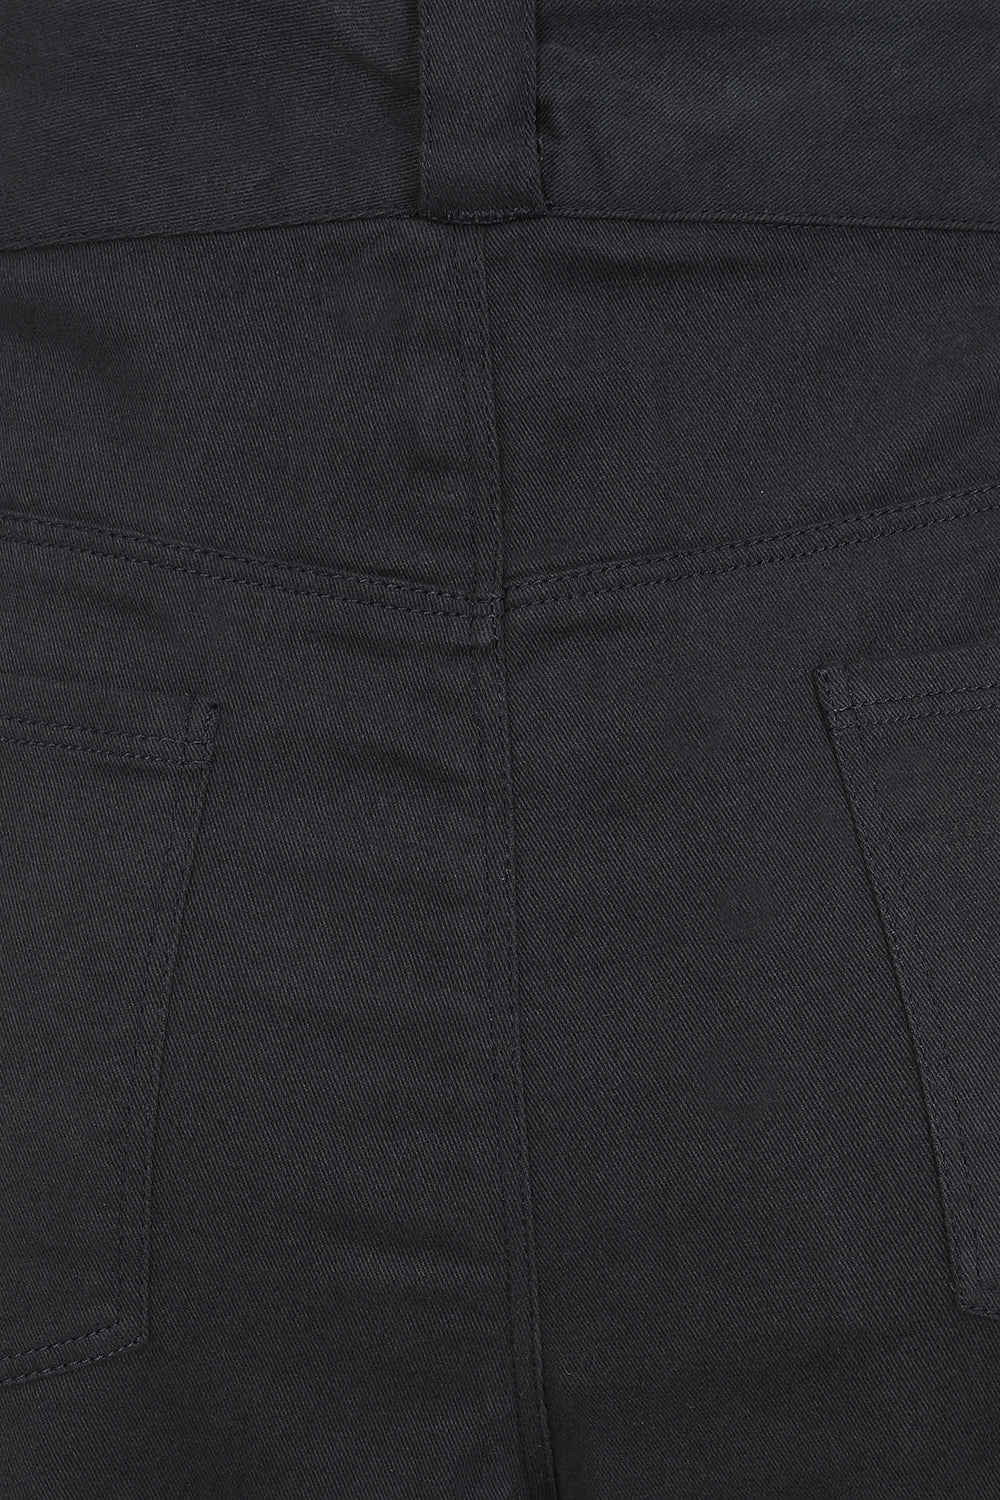 Caraway Pant - Grey - Organic Cotton Jean